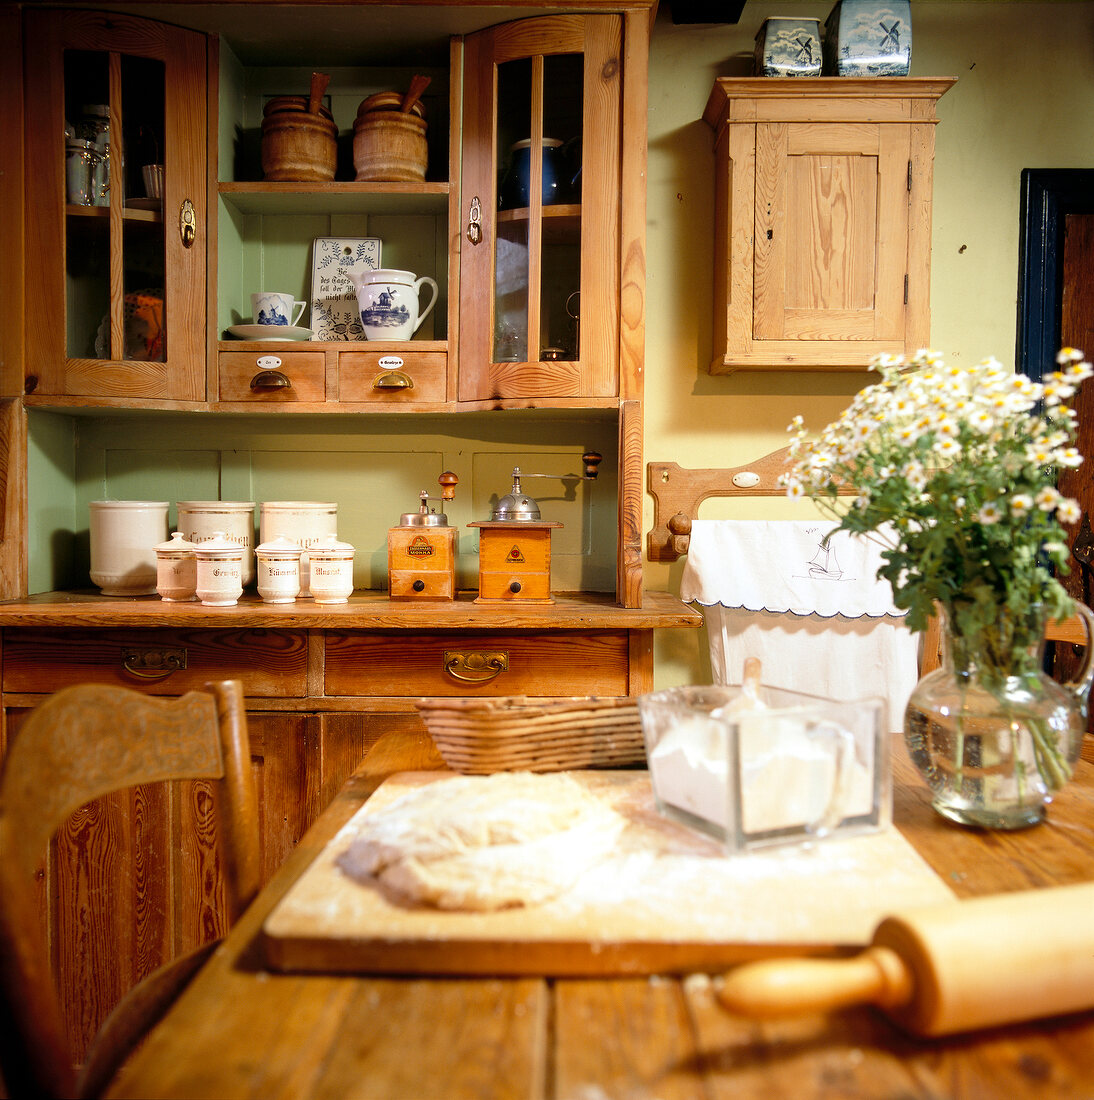 Antiker Küchenschrank im Landhaus- stil, Teig u. Nudelholz auf Tisch.